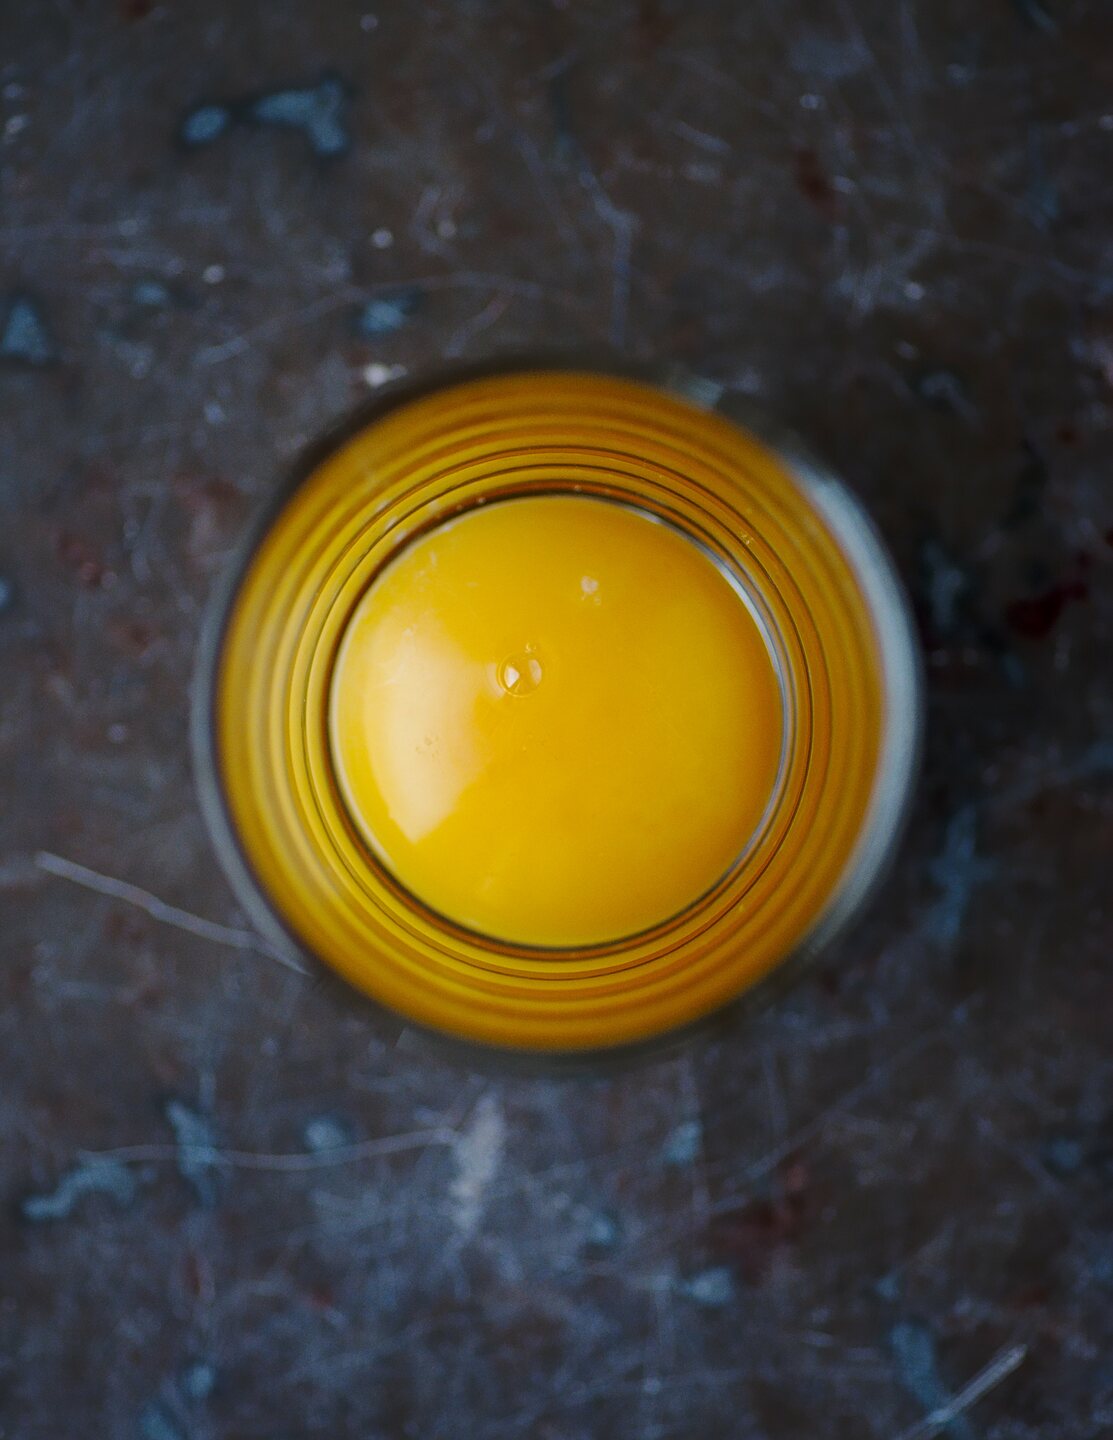 Egg yolk 01